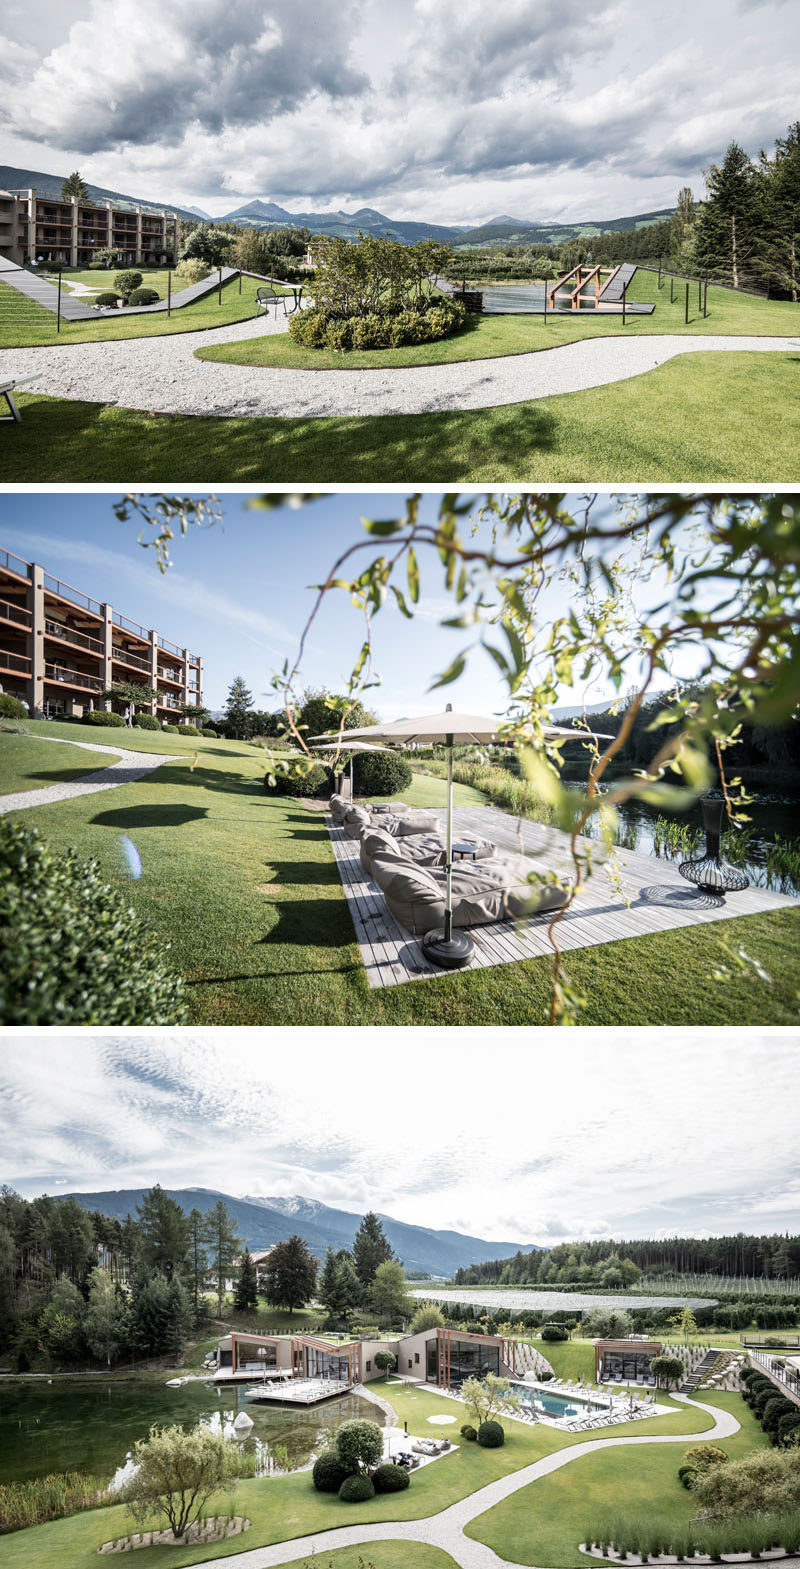 Отель Seehof, семейный отель в Италии, расположенный рядом с небольшим природным озером, был обновлен в современном стиле от сети архитектурных бюро noa *. # ModernHotel # Италия # Отдых # Современная архитектура